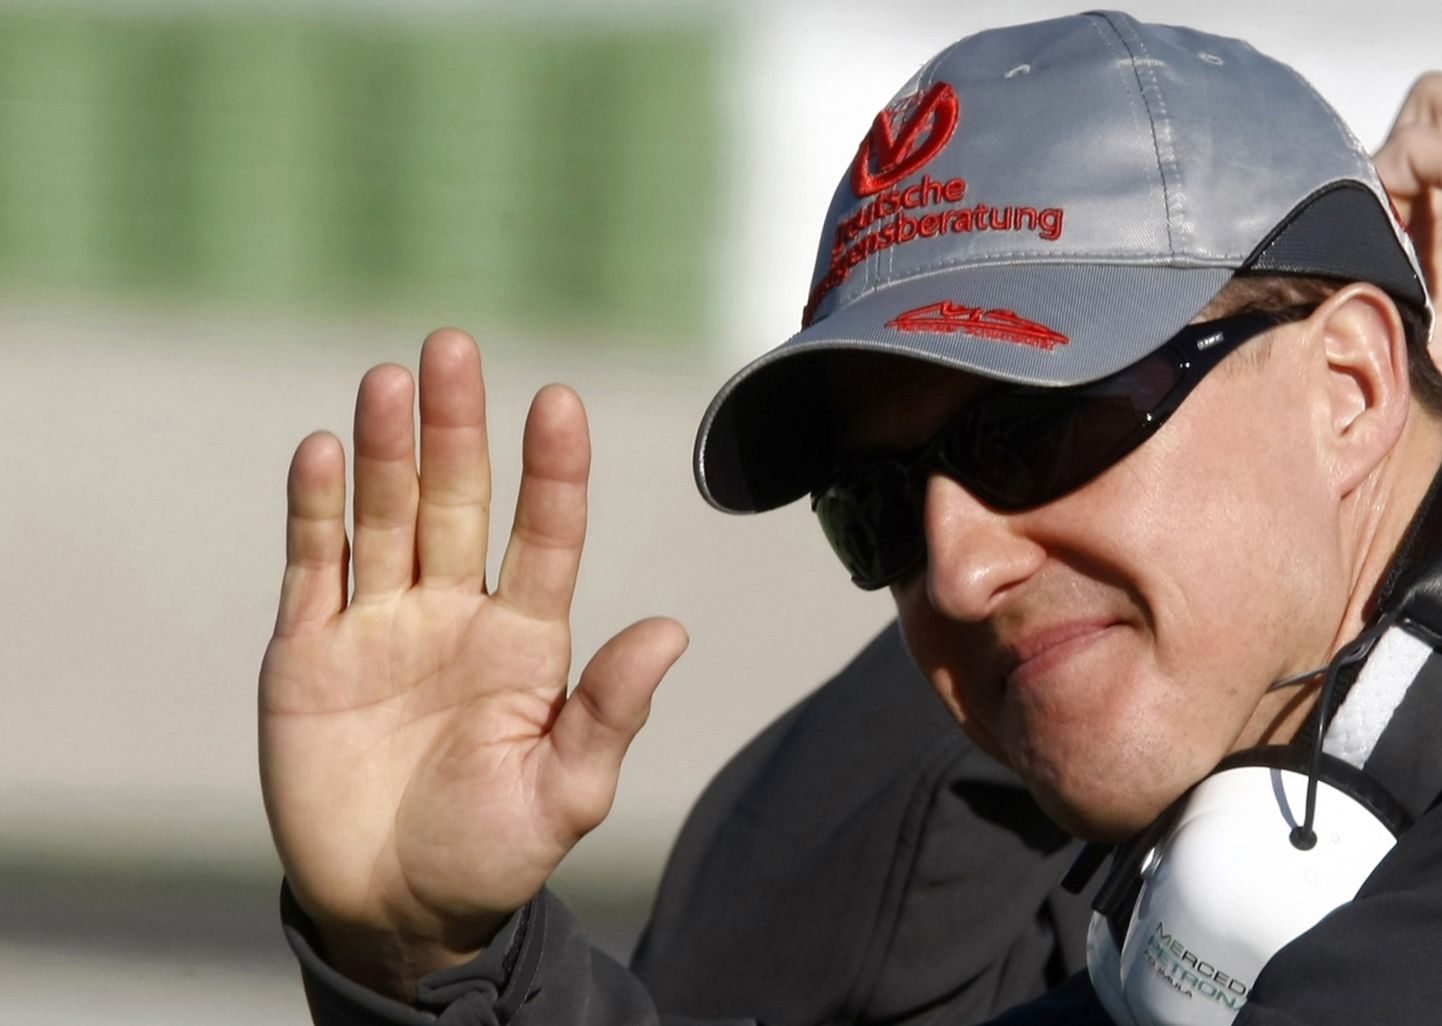 Michael Schumacheri seis on pärast 2013. aasta suusaõnnetust jätkuvalt täbar